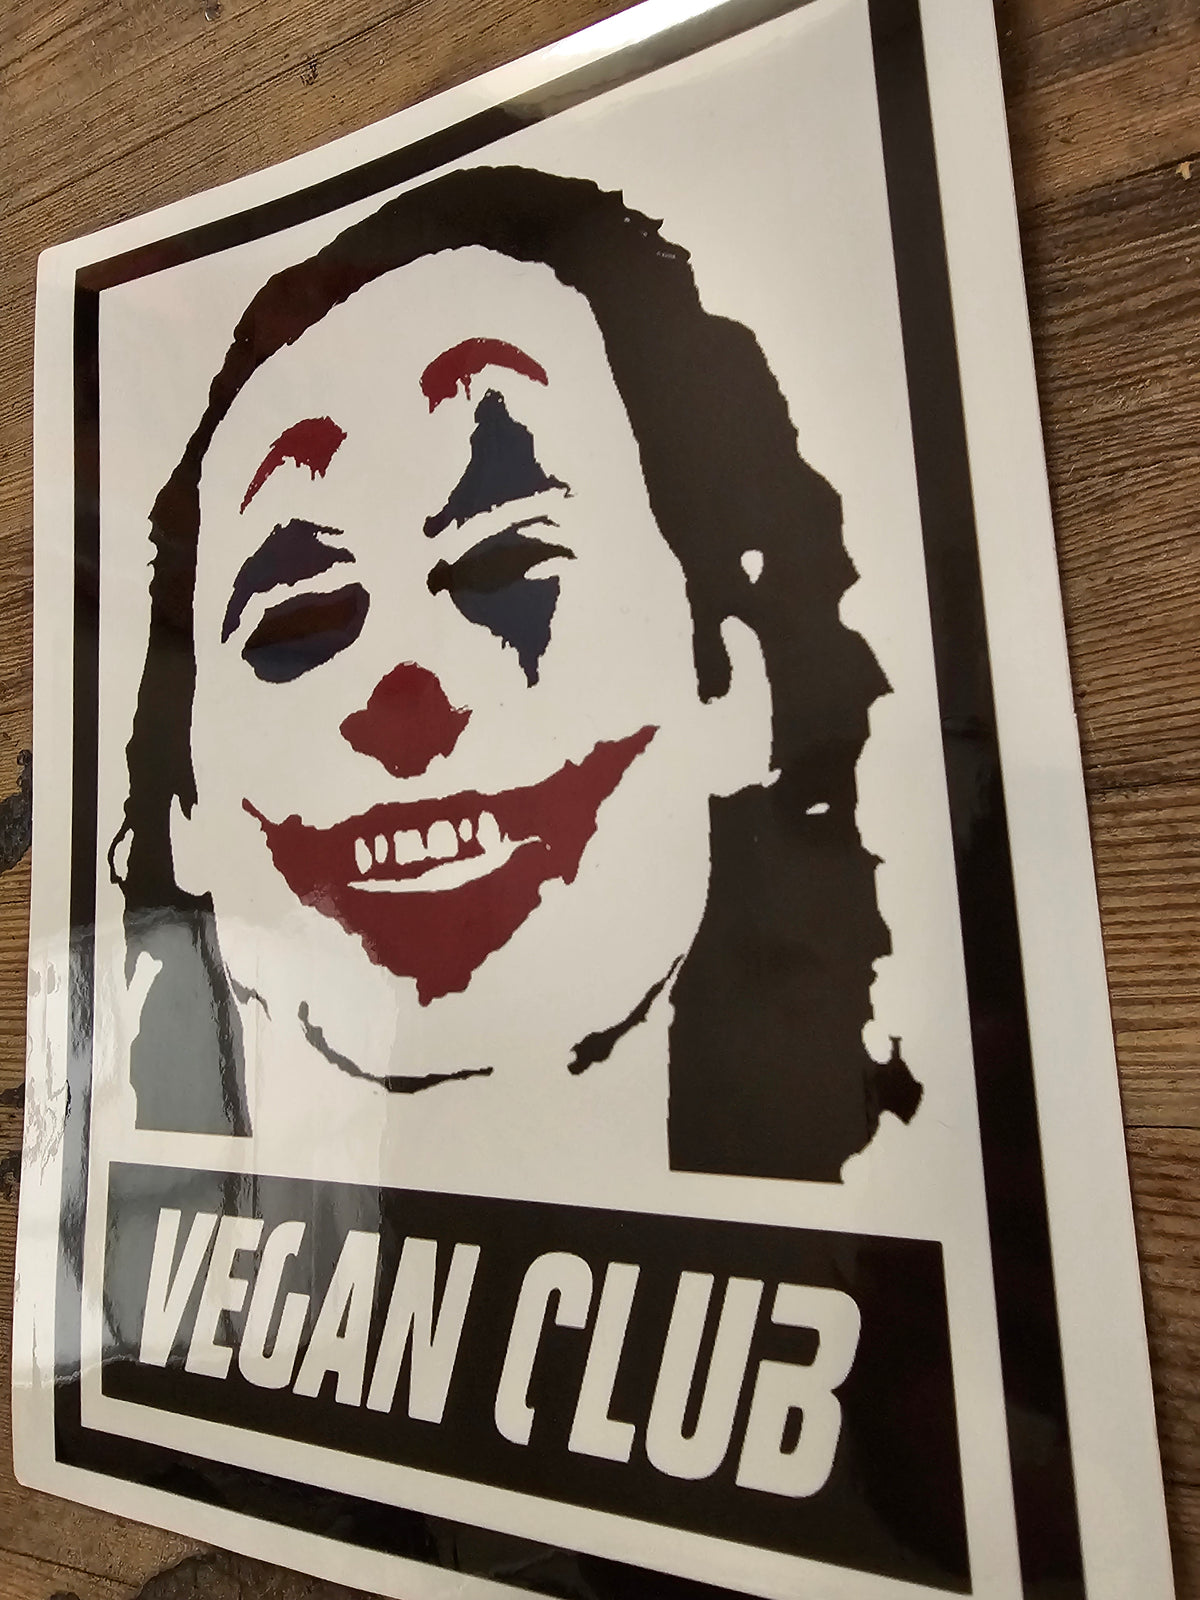 Vegan Club Joker Waterproof Sticker 14x11 - great for Street Art on the Fly!